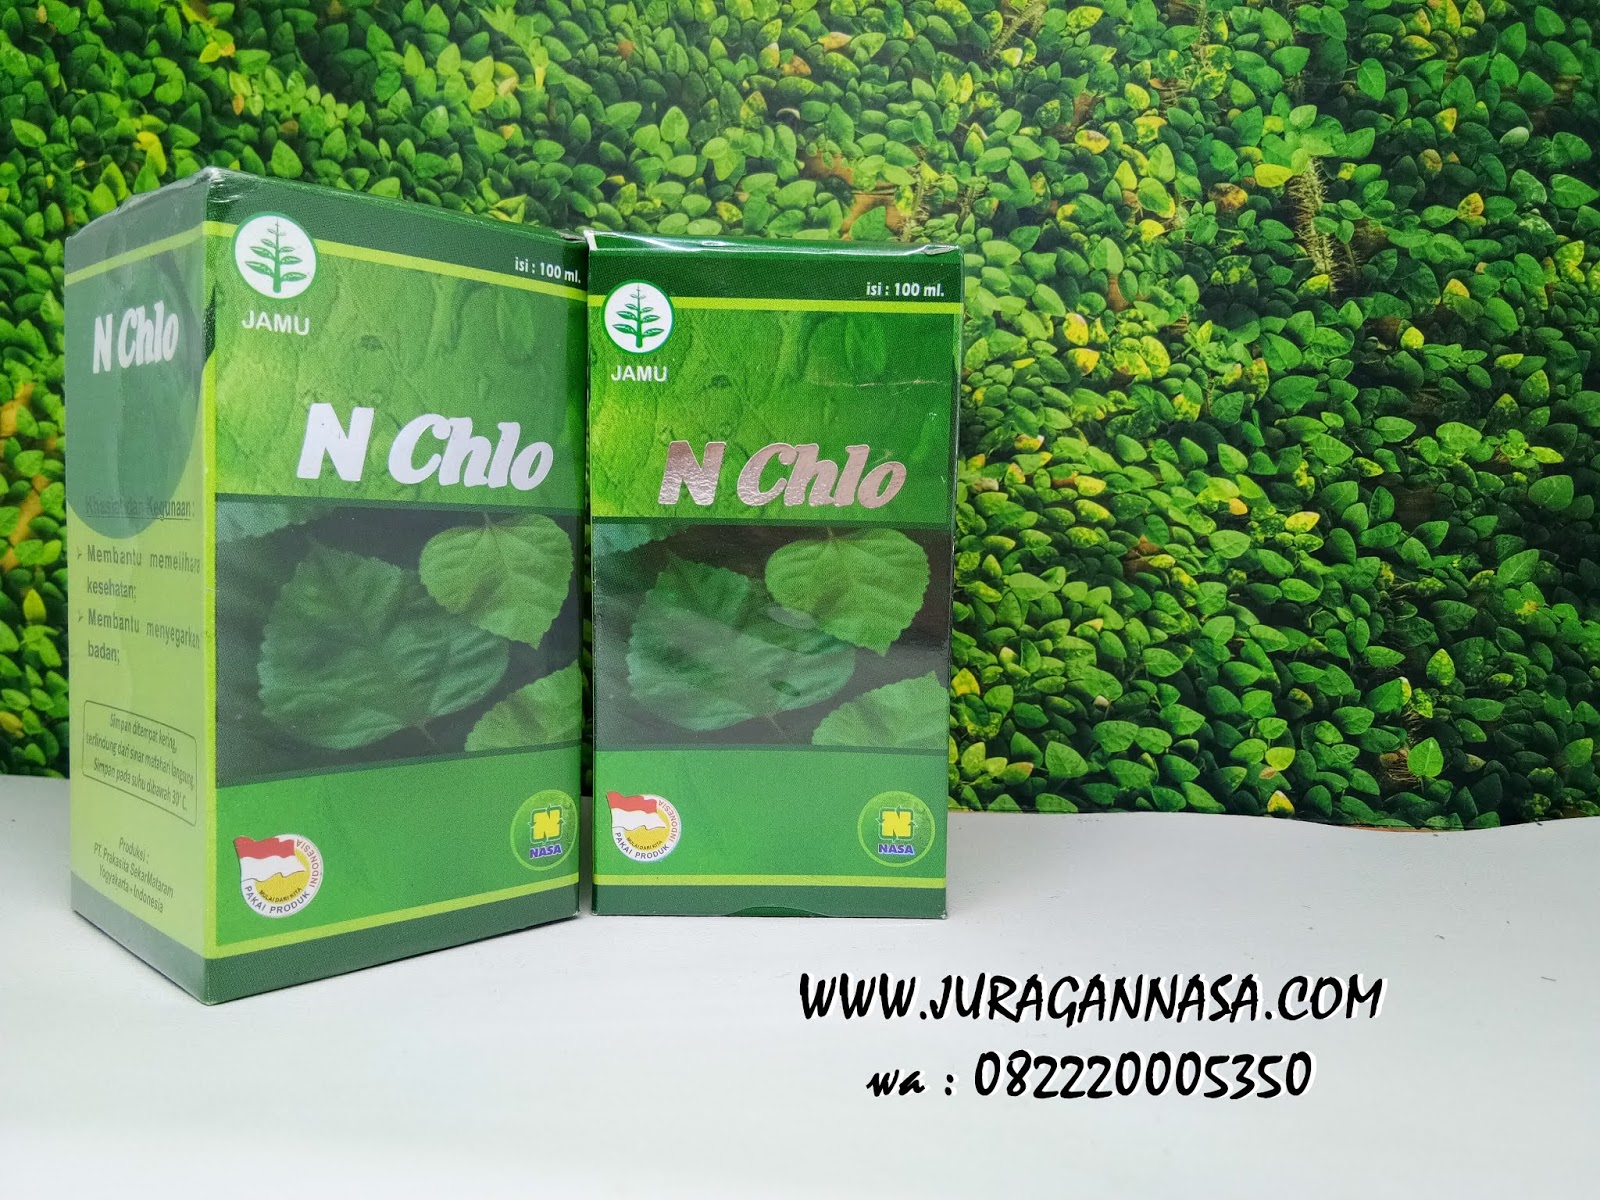 Manfaat Natural Chlorophyllin Nasa Kandungan N chlo Nasa Jual N chlo Harga N